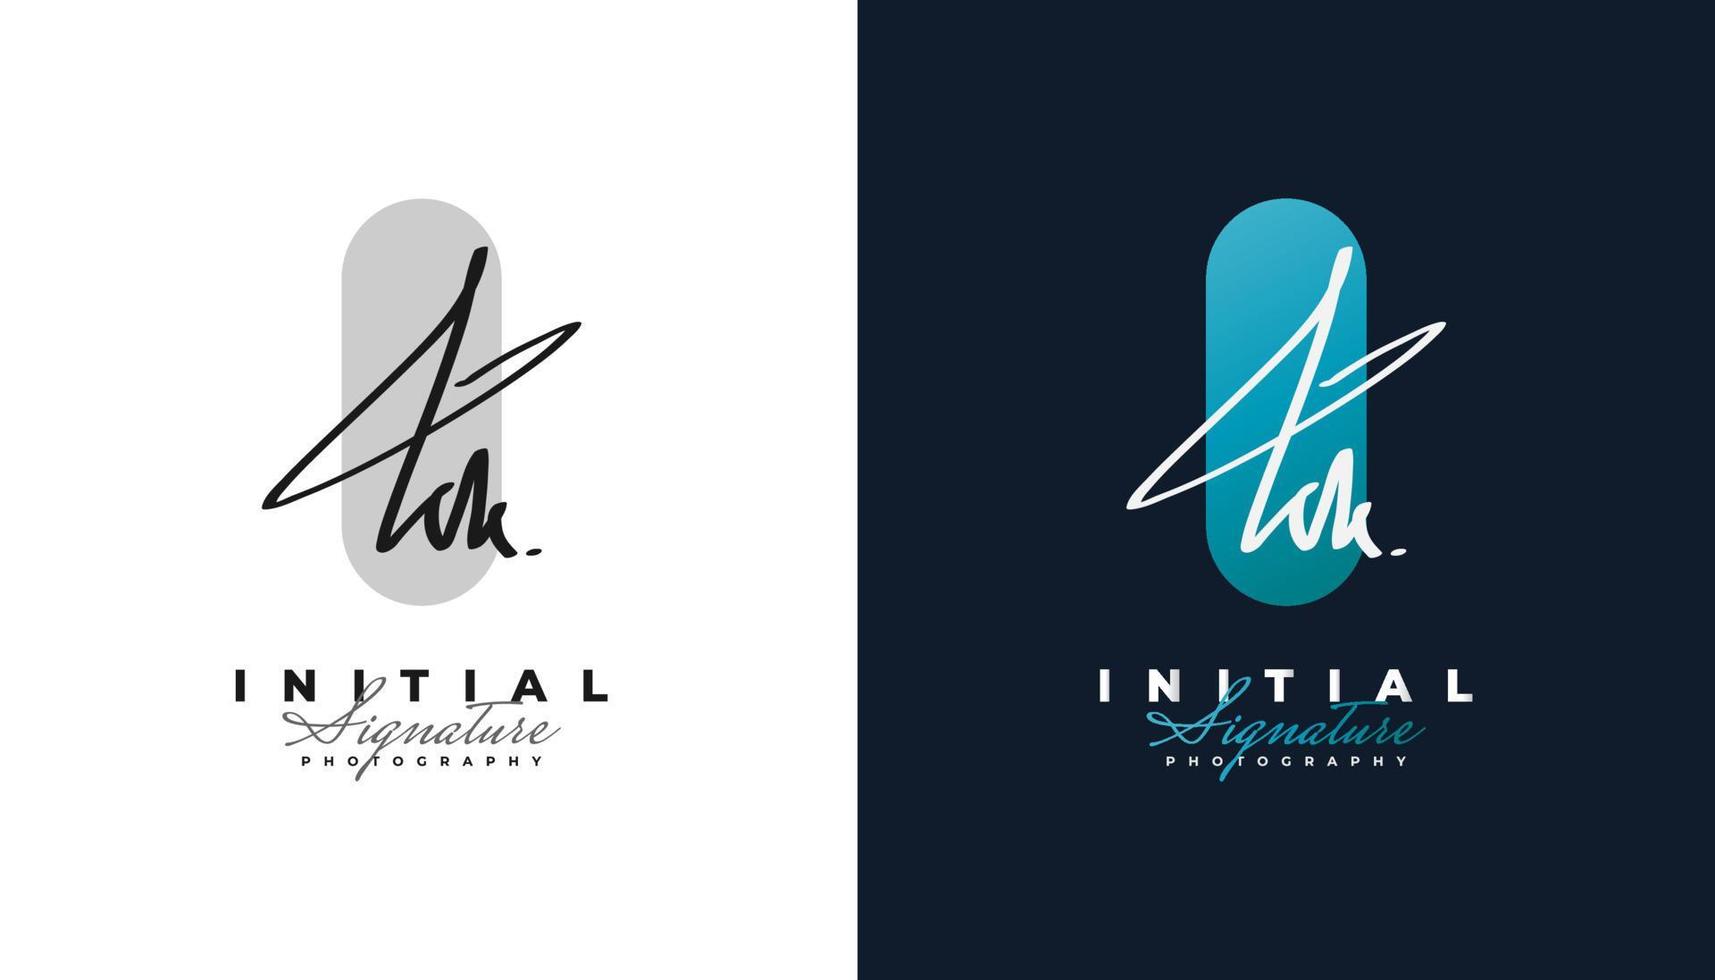 Diseño de logotipo inicial de la firma kk con estilo de escritura a mano. logotipo o símbolo de la firma kk para bodas, moda, joyería, boutique, identidad botánica, floral y empresarial vector